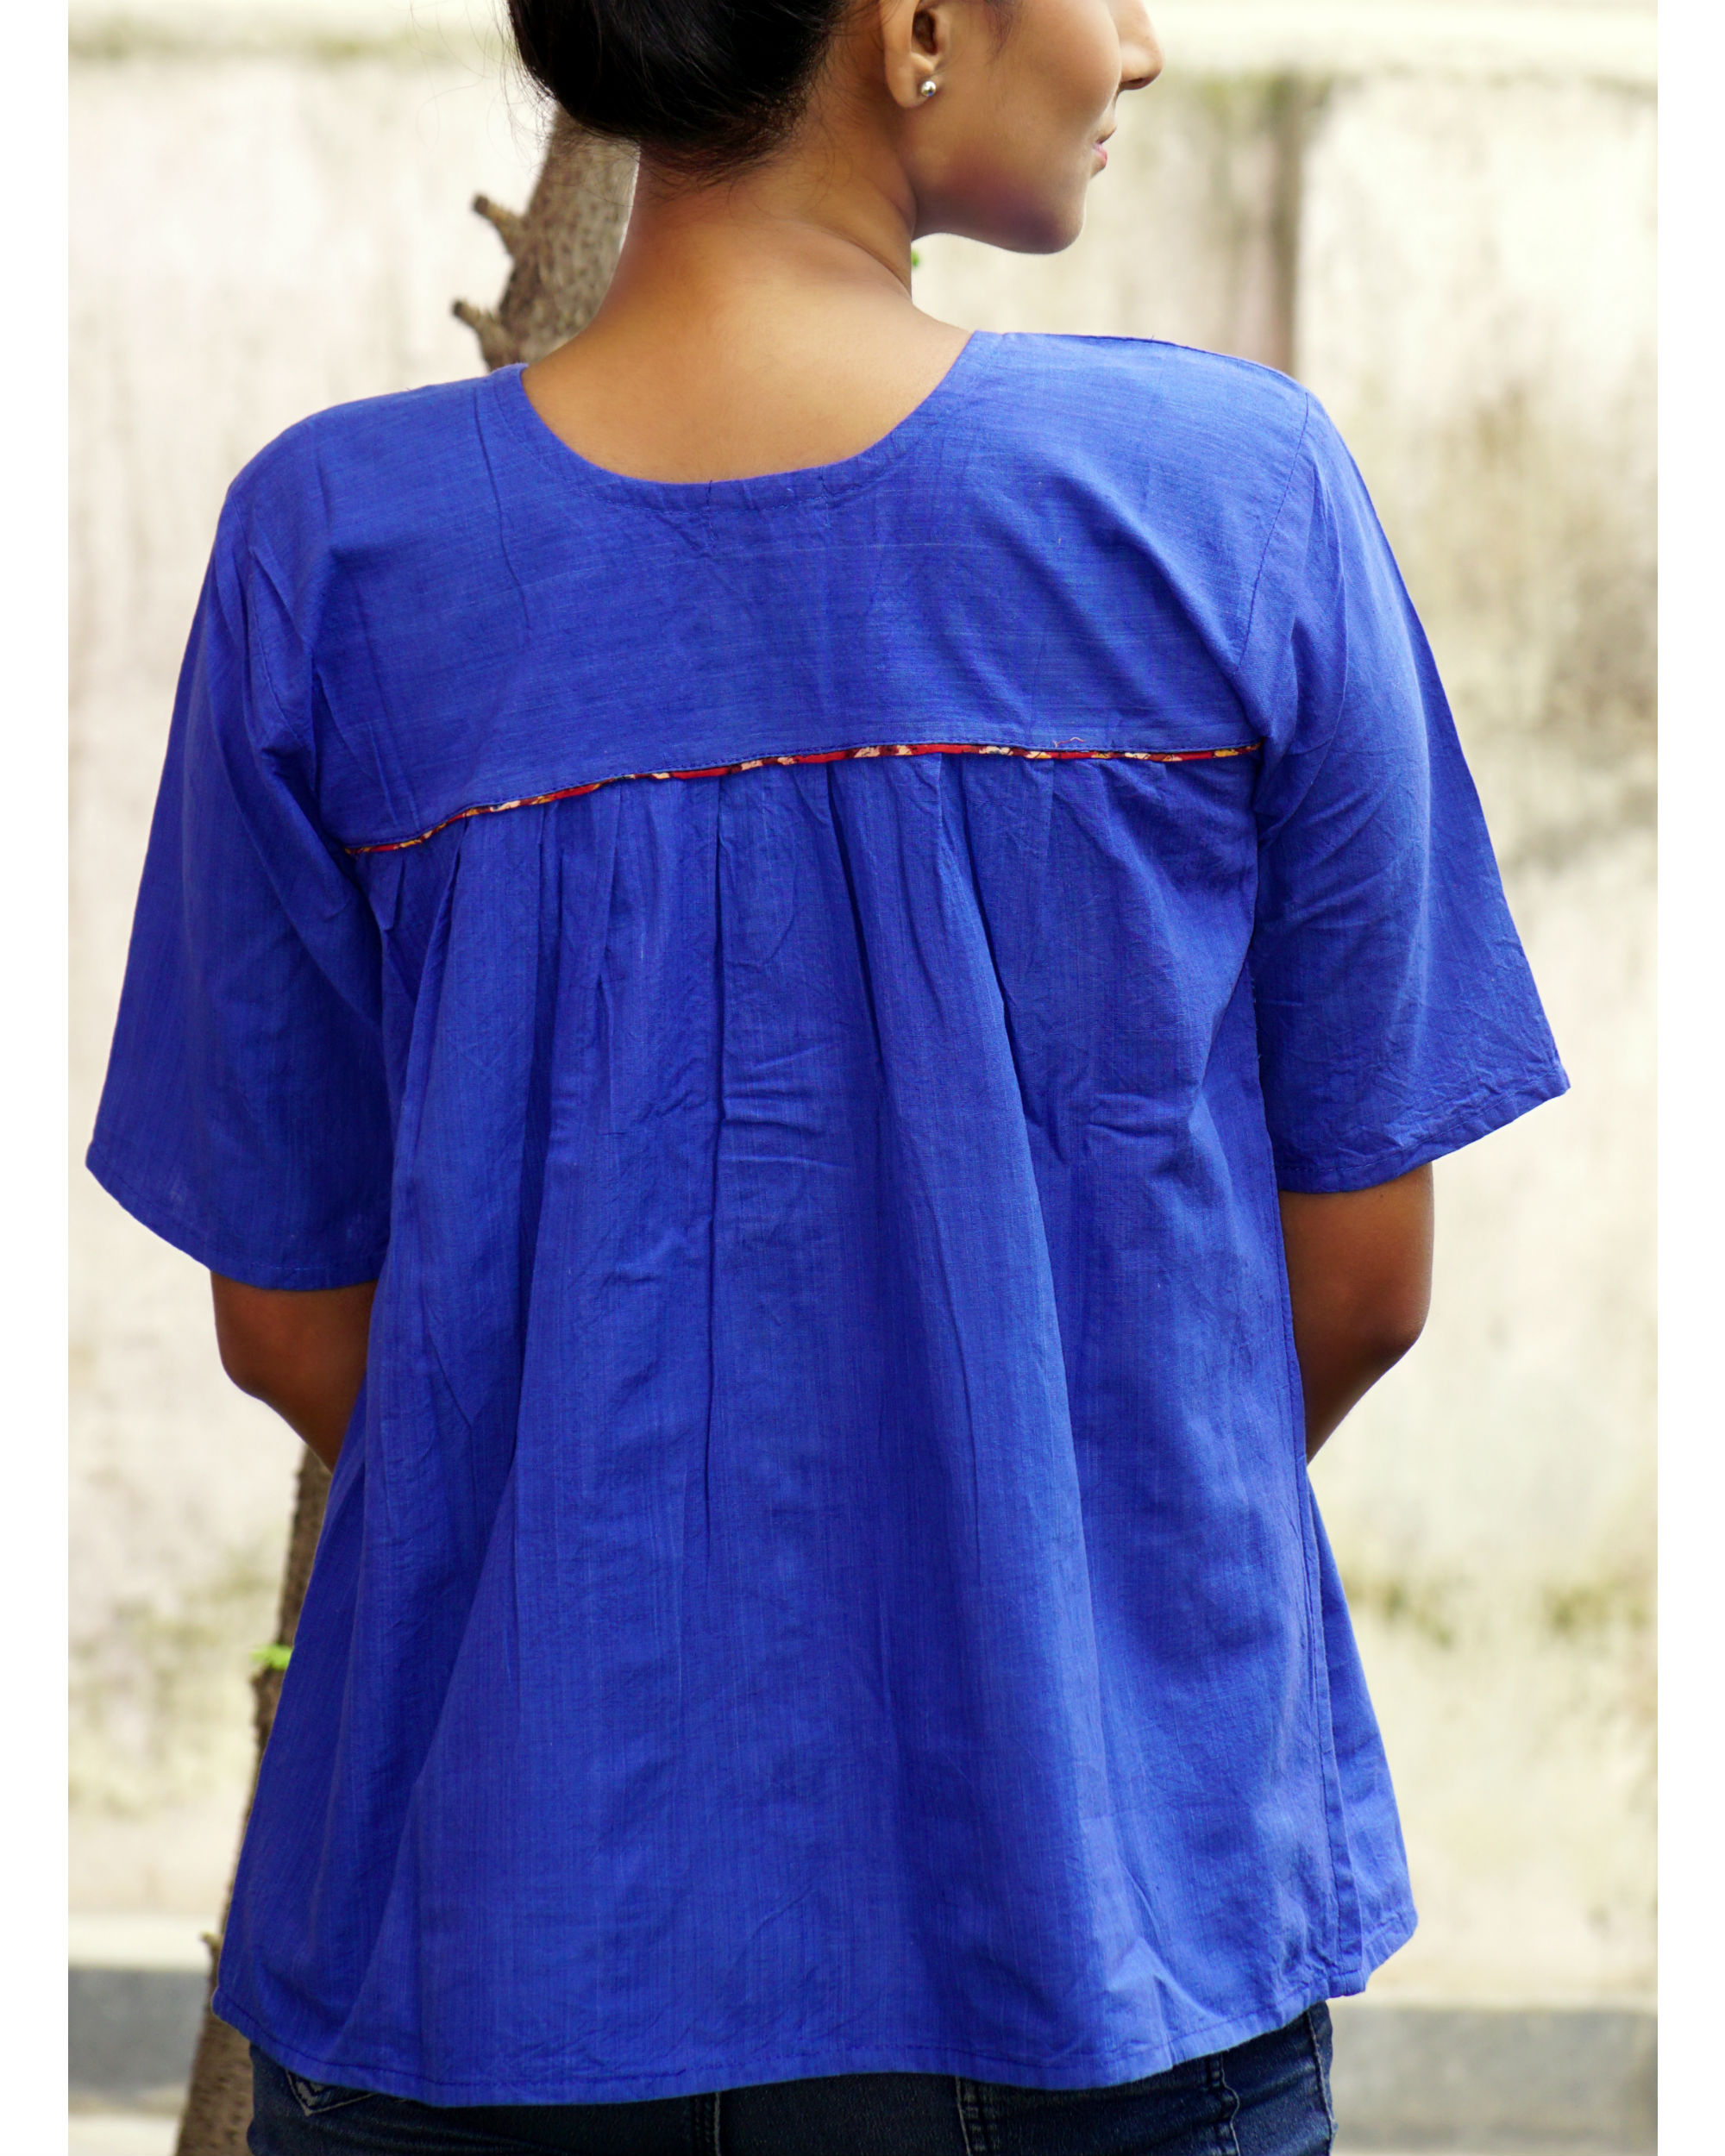 Blue yoke shirt by Bebaak | The Secret Label